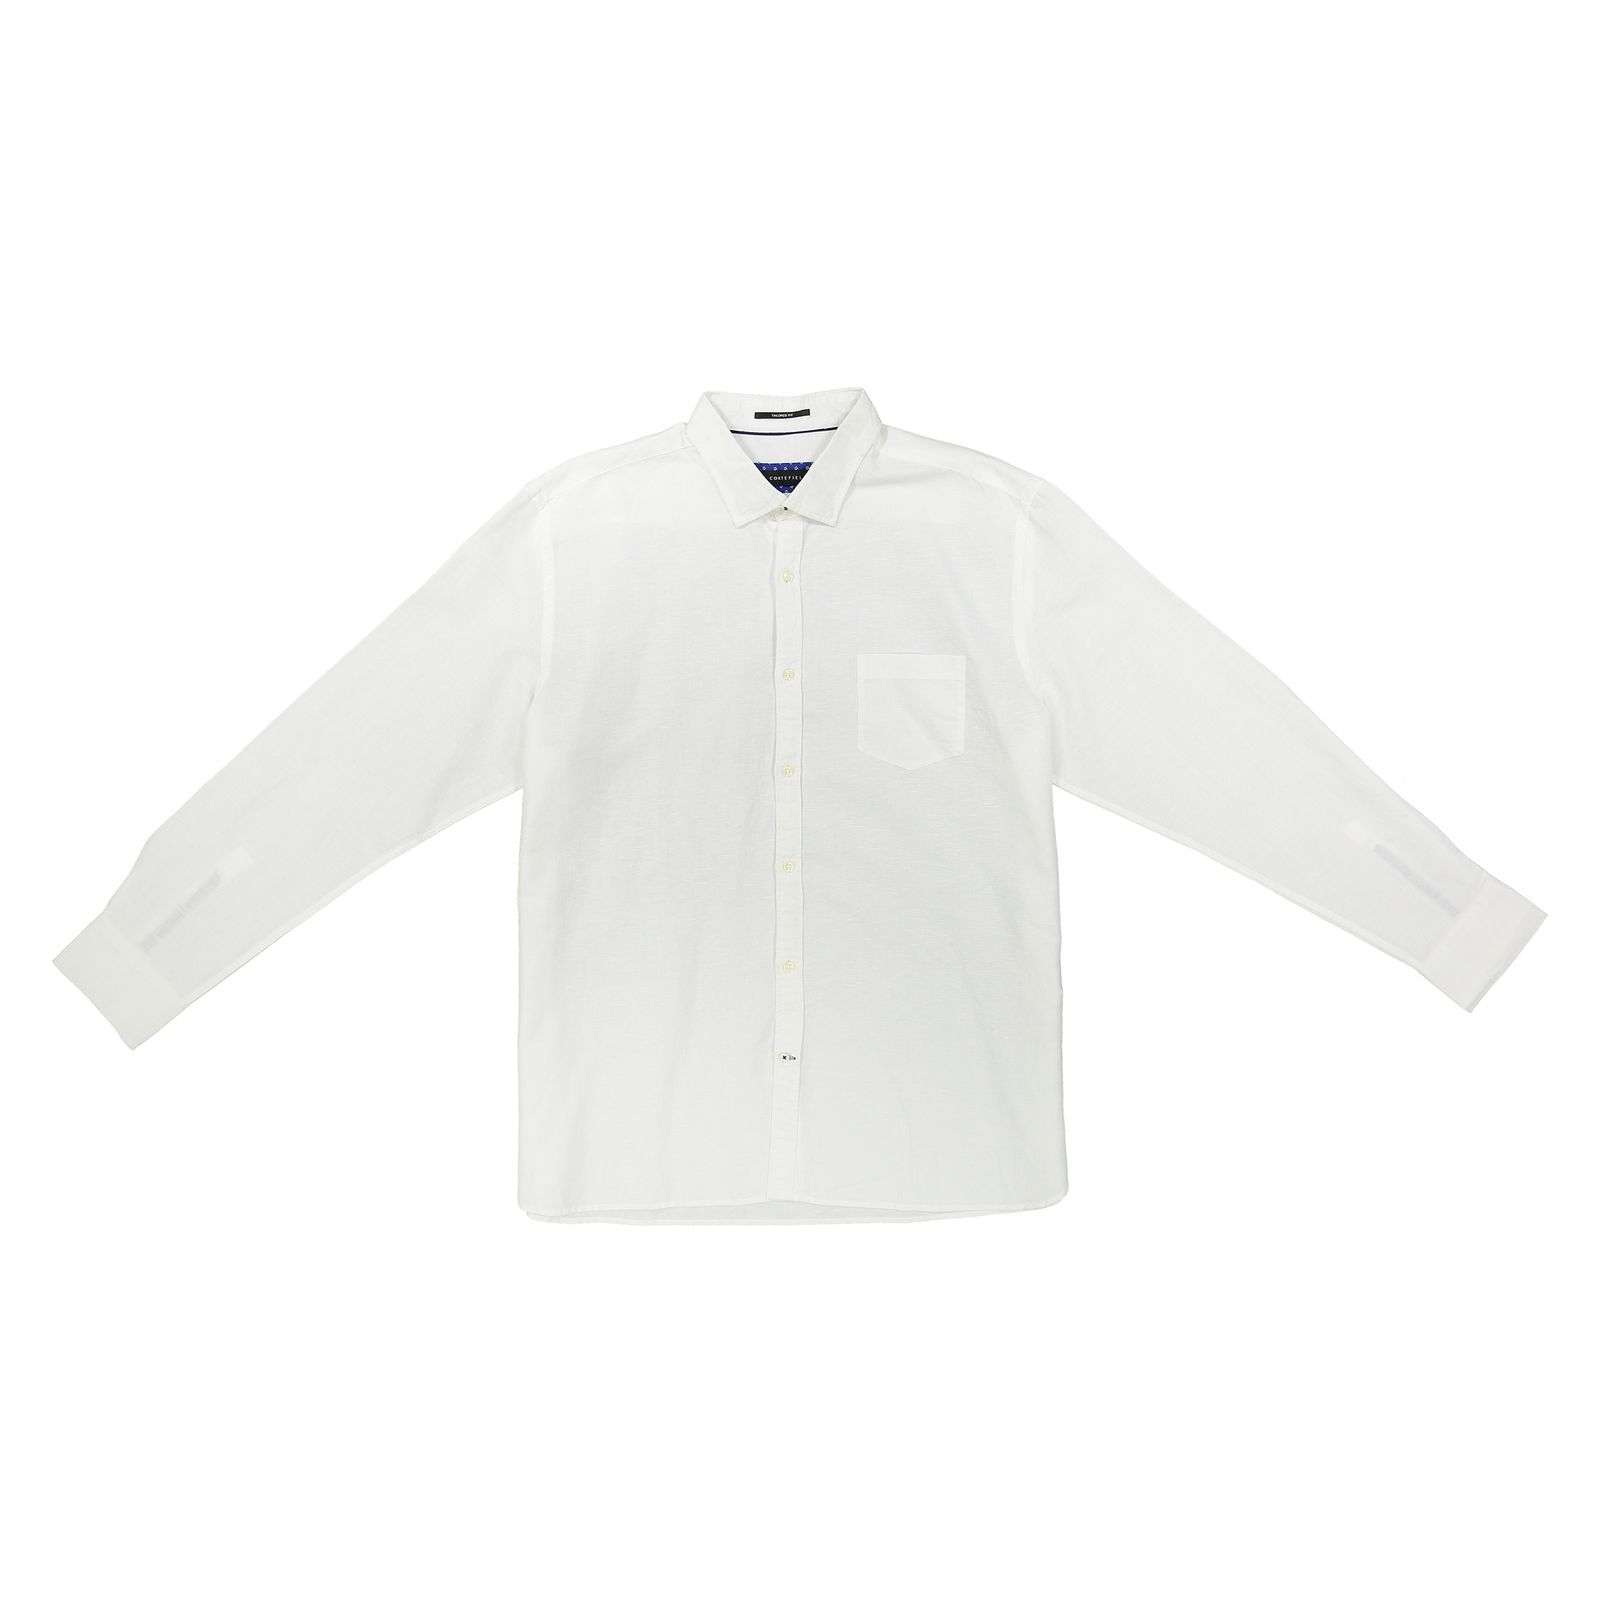 پیراهن مردانه کورتفیل مدل 2219085-99 - سفید - 1